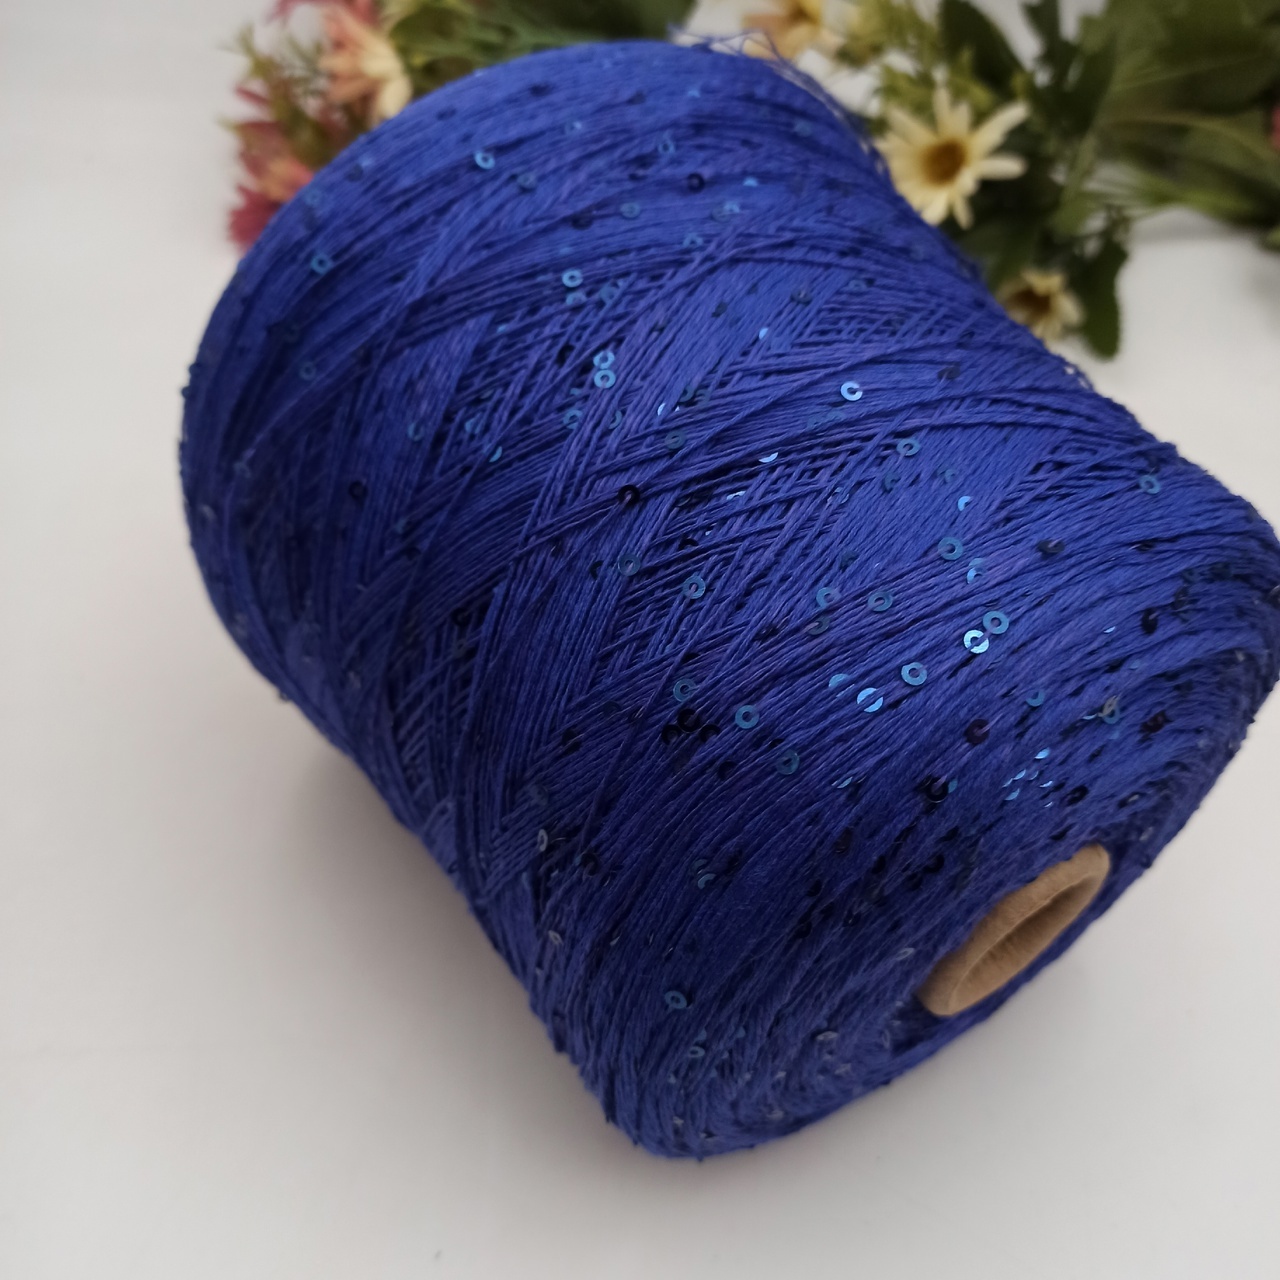 Cotton Stellar - 008 Синий с фиолетовым подтоном, пайетка 3мм в цвет